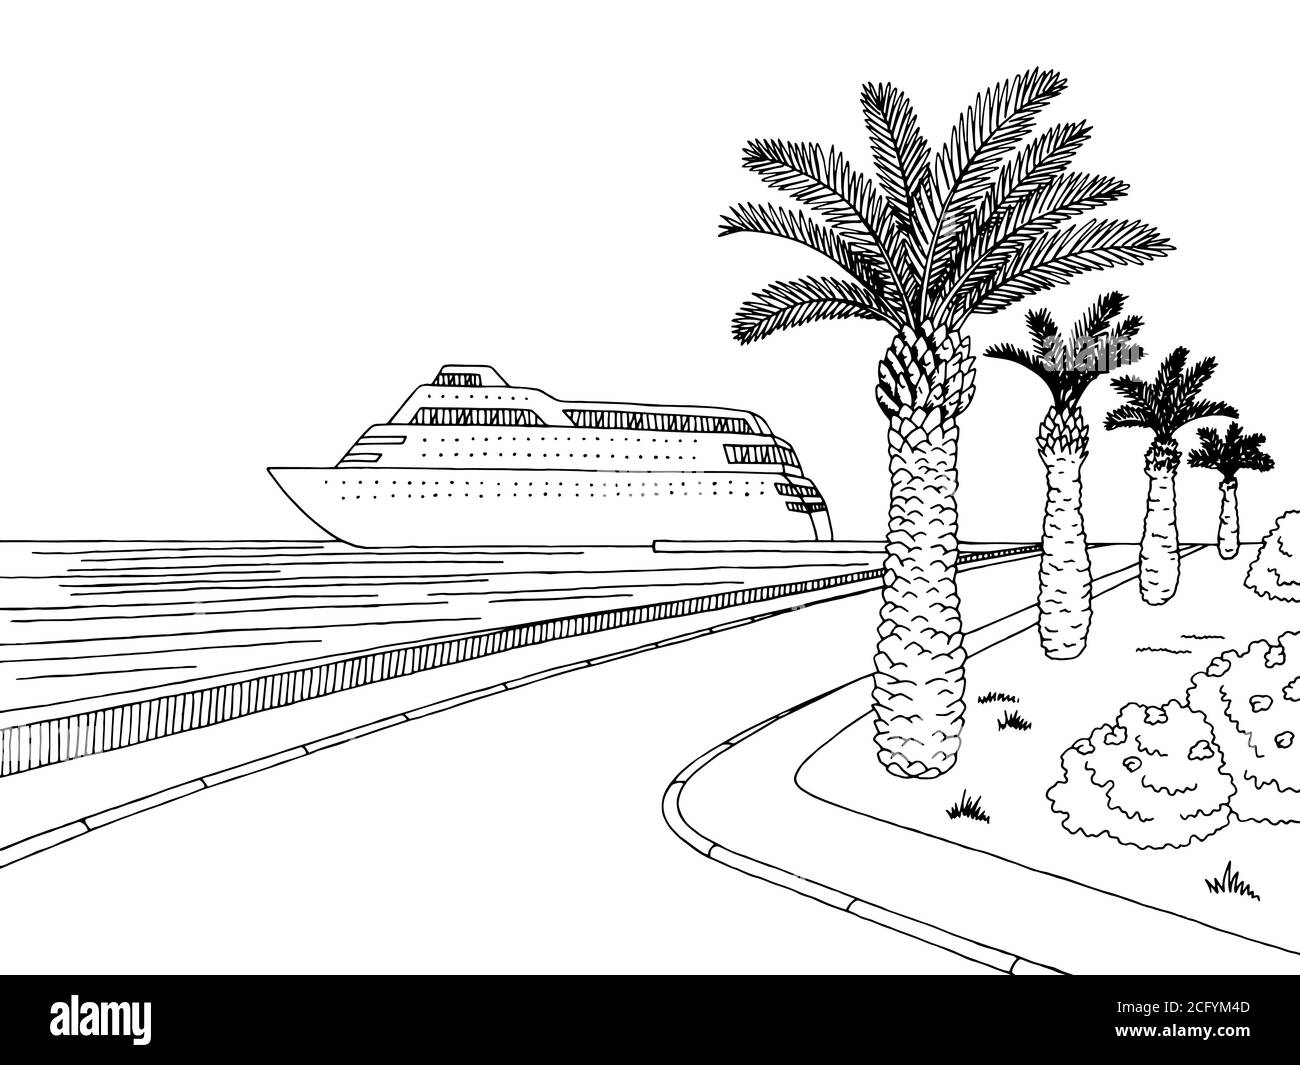 Bateau de croisière graphique en bord de mer, dessin de paysage noir blanc vecteur Illustration de Vecteur